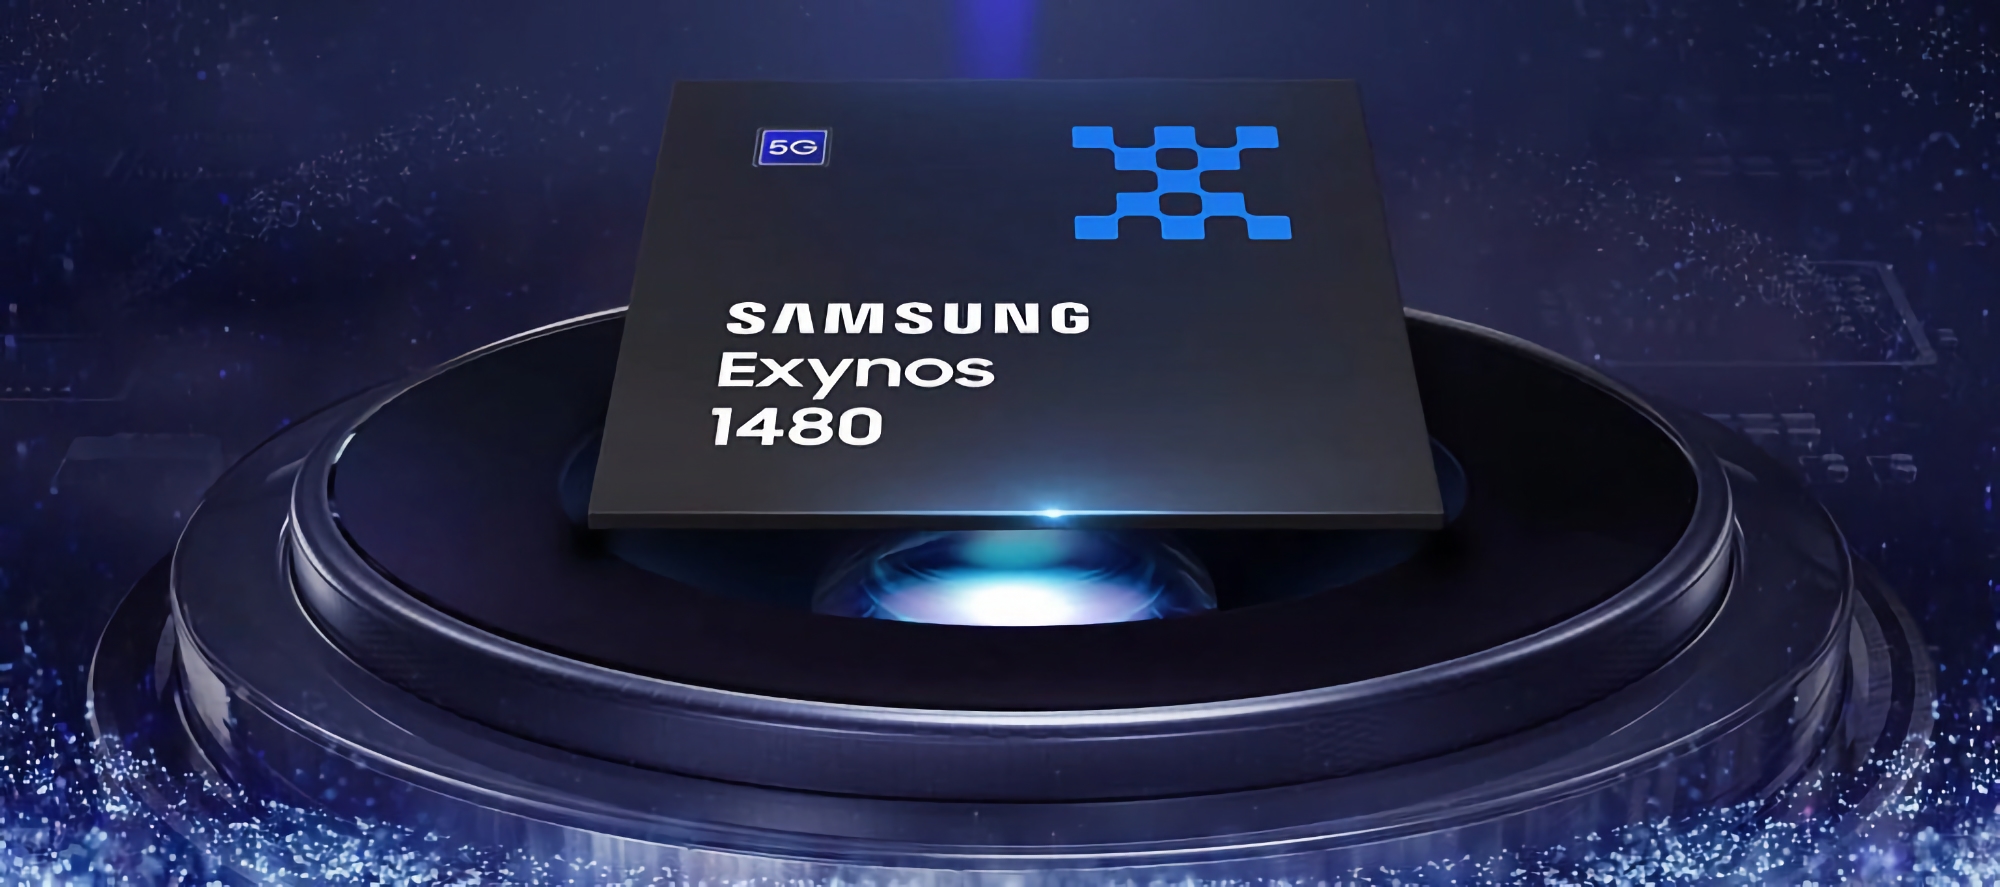 Samsung har avslöjat specifikationerna för Exynos 1480-chippet: åtta kärnor, 4 nanometer och Xclipse 530-grafik med AMD RDNA 2-arkitektur